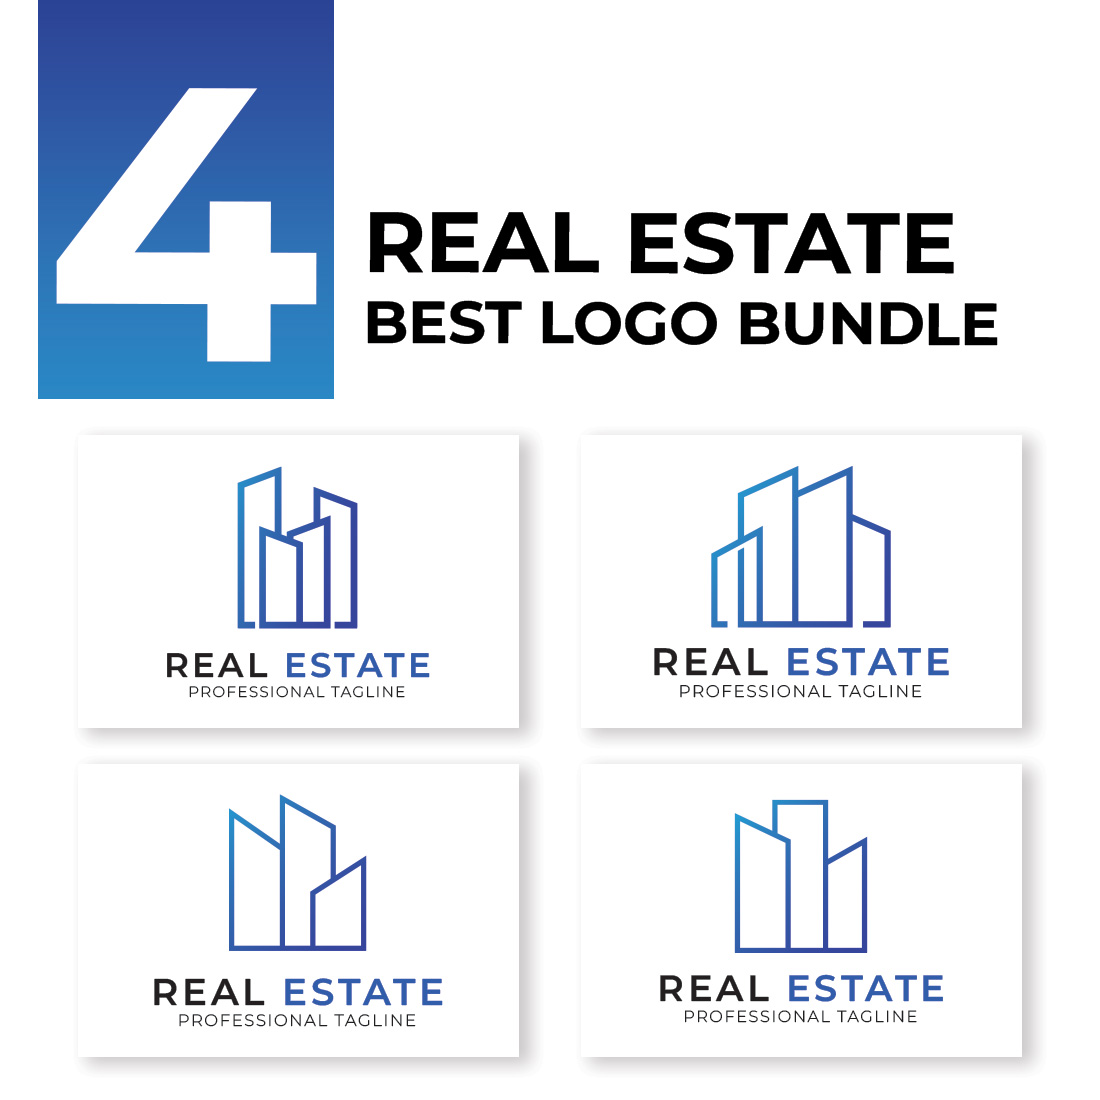 Building Real Estate Logo Bundle cover image.